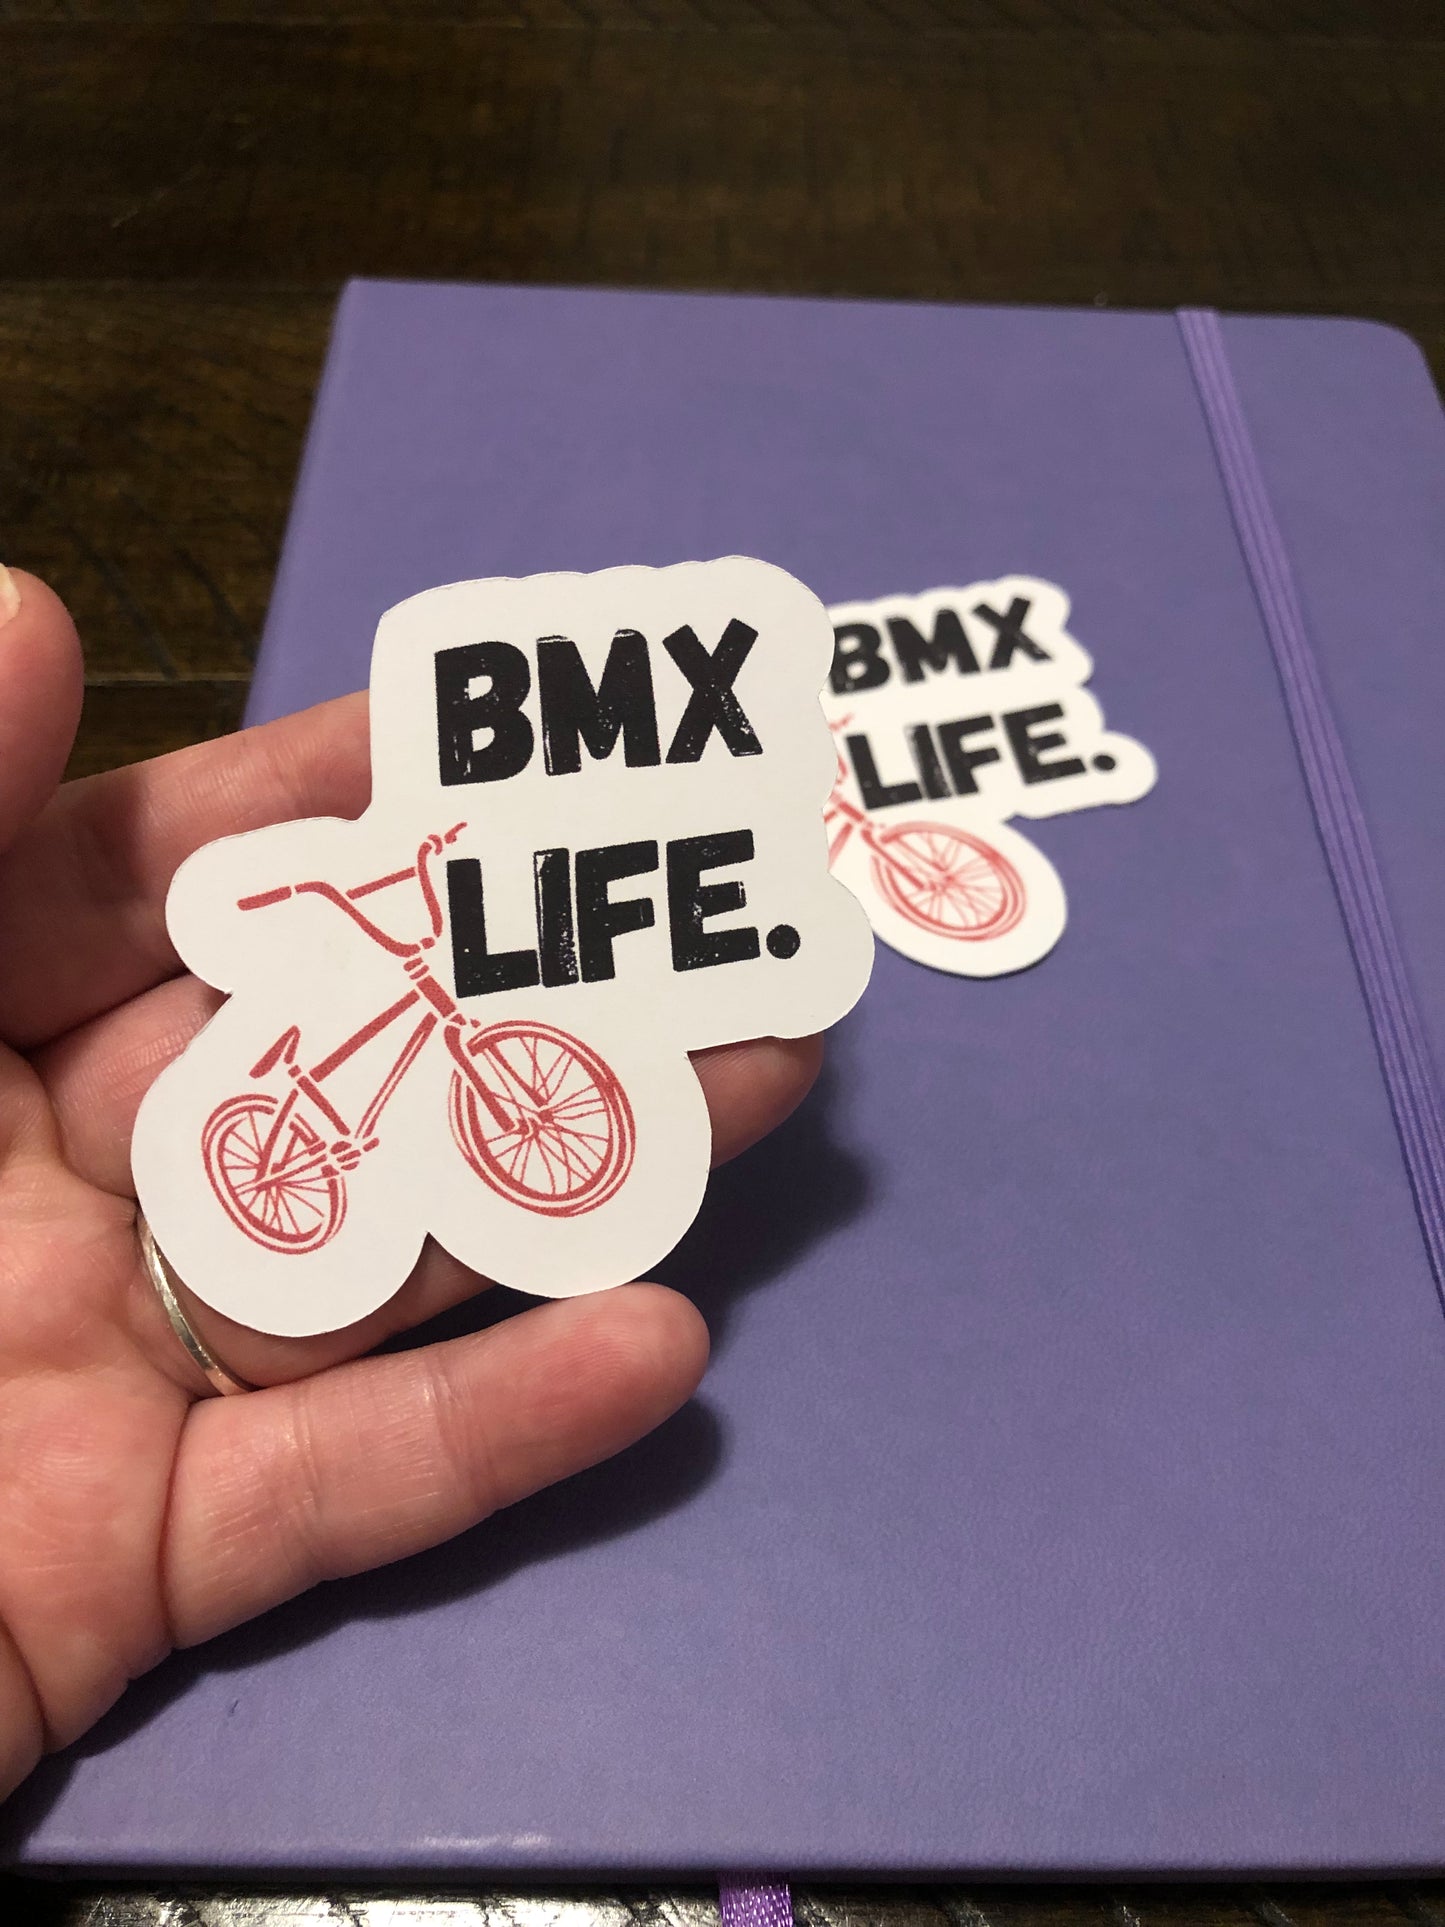 BMX Life. Sticker